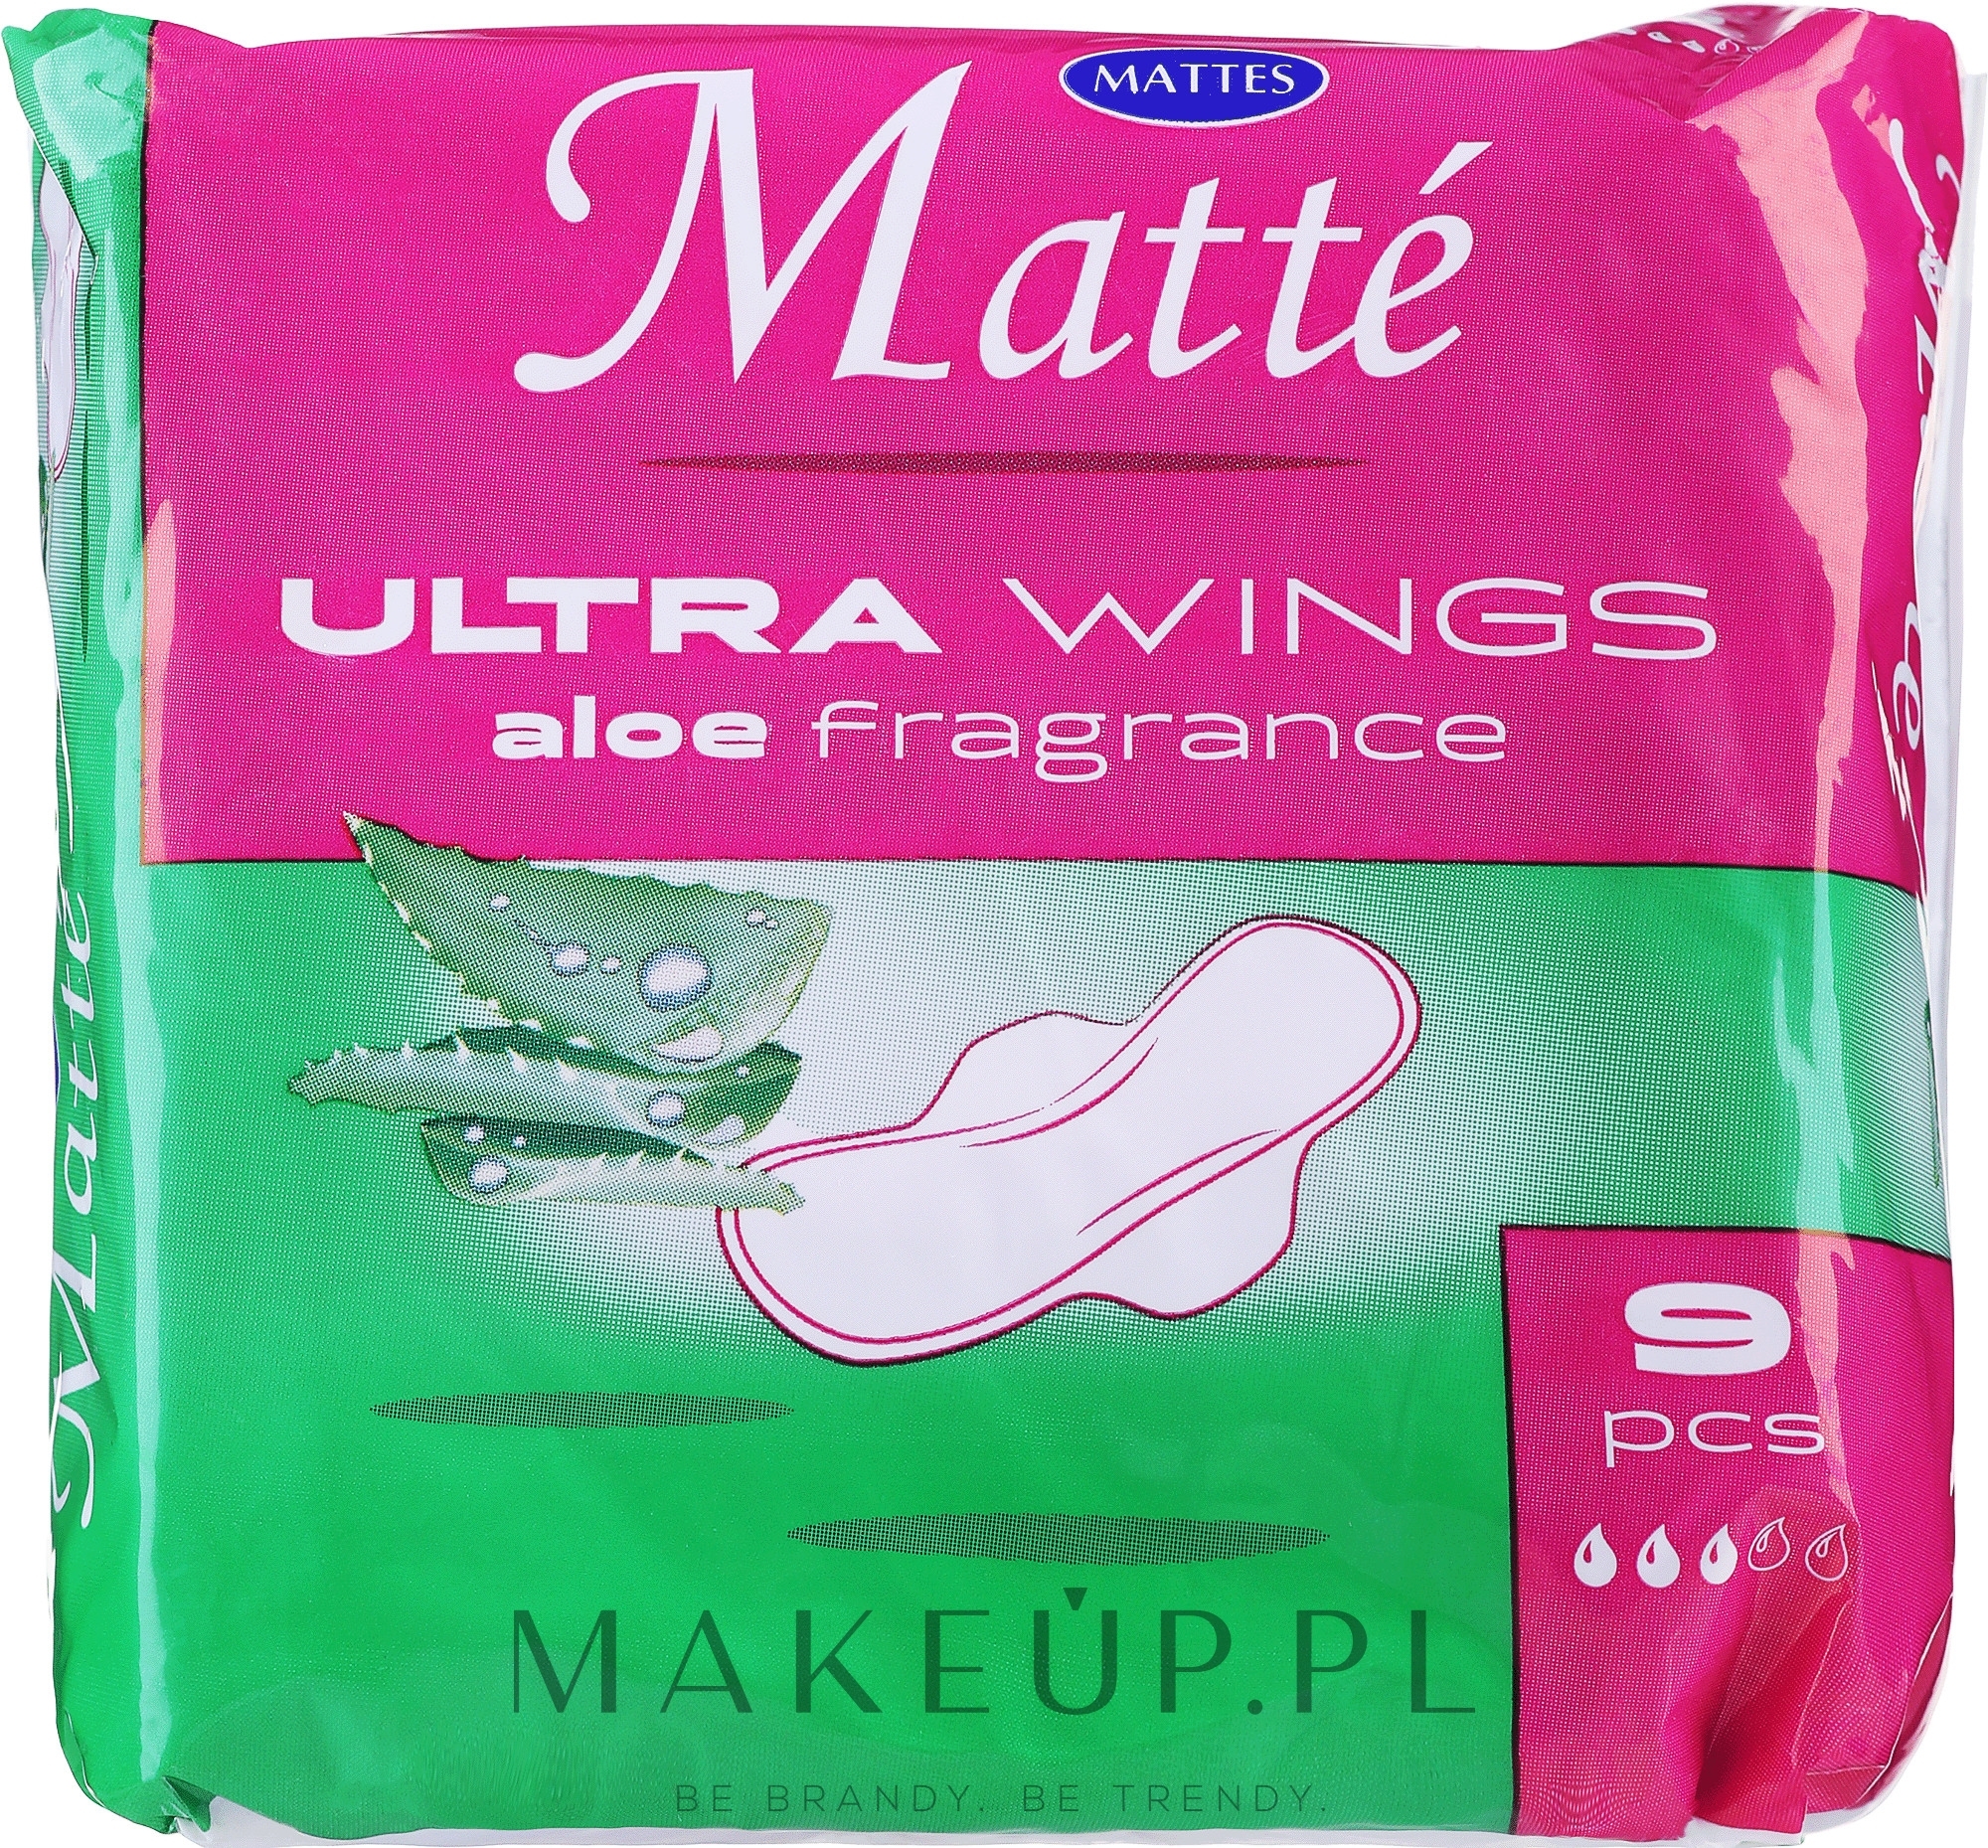 Podpaski higieniczne ze skrzydełkami, 9 szt. - Mattes Ultra Wings Aloe — Zdjęcie 9 szt.